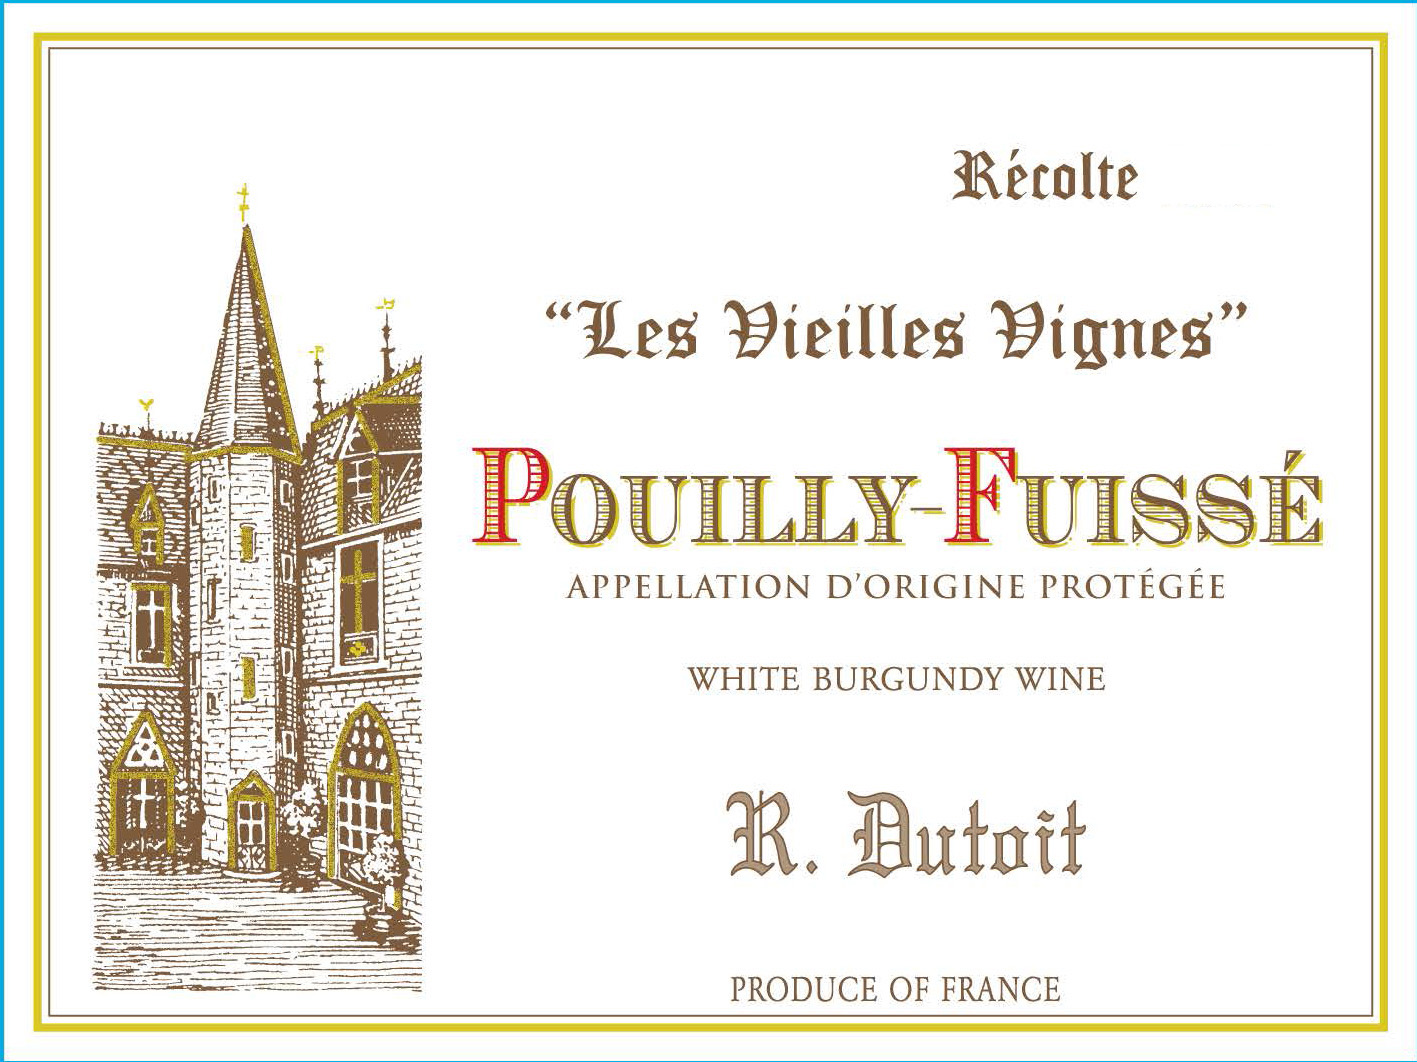 R. Dutoit - Les Vieilles Vignes Pouilly-Fuisse label